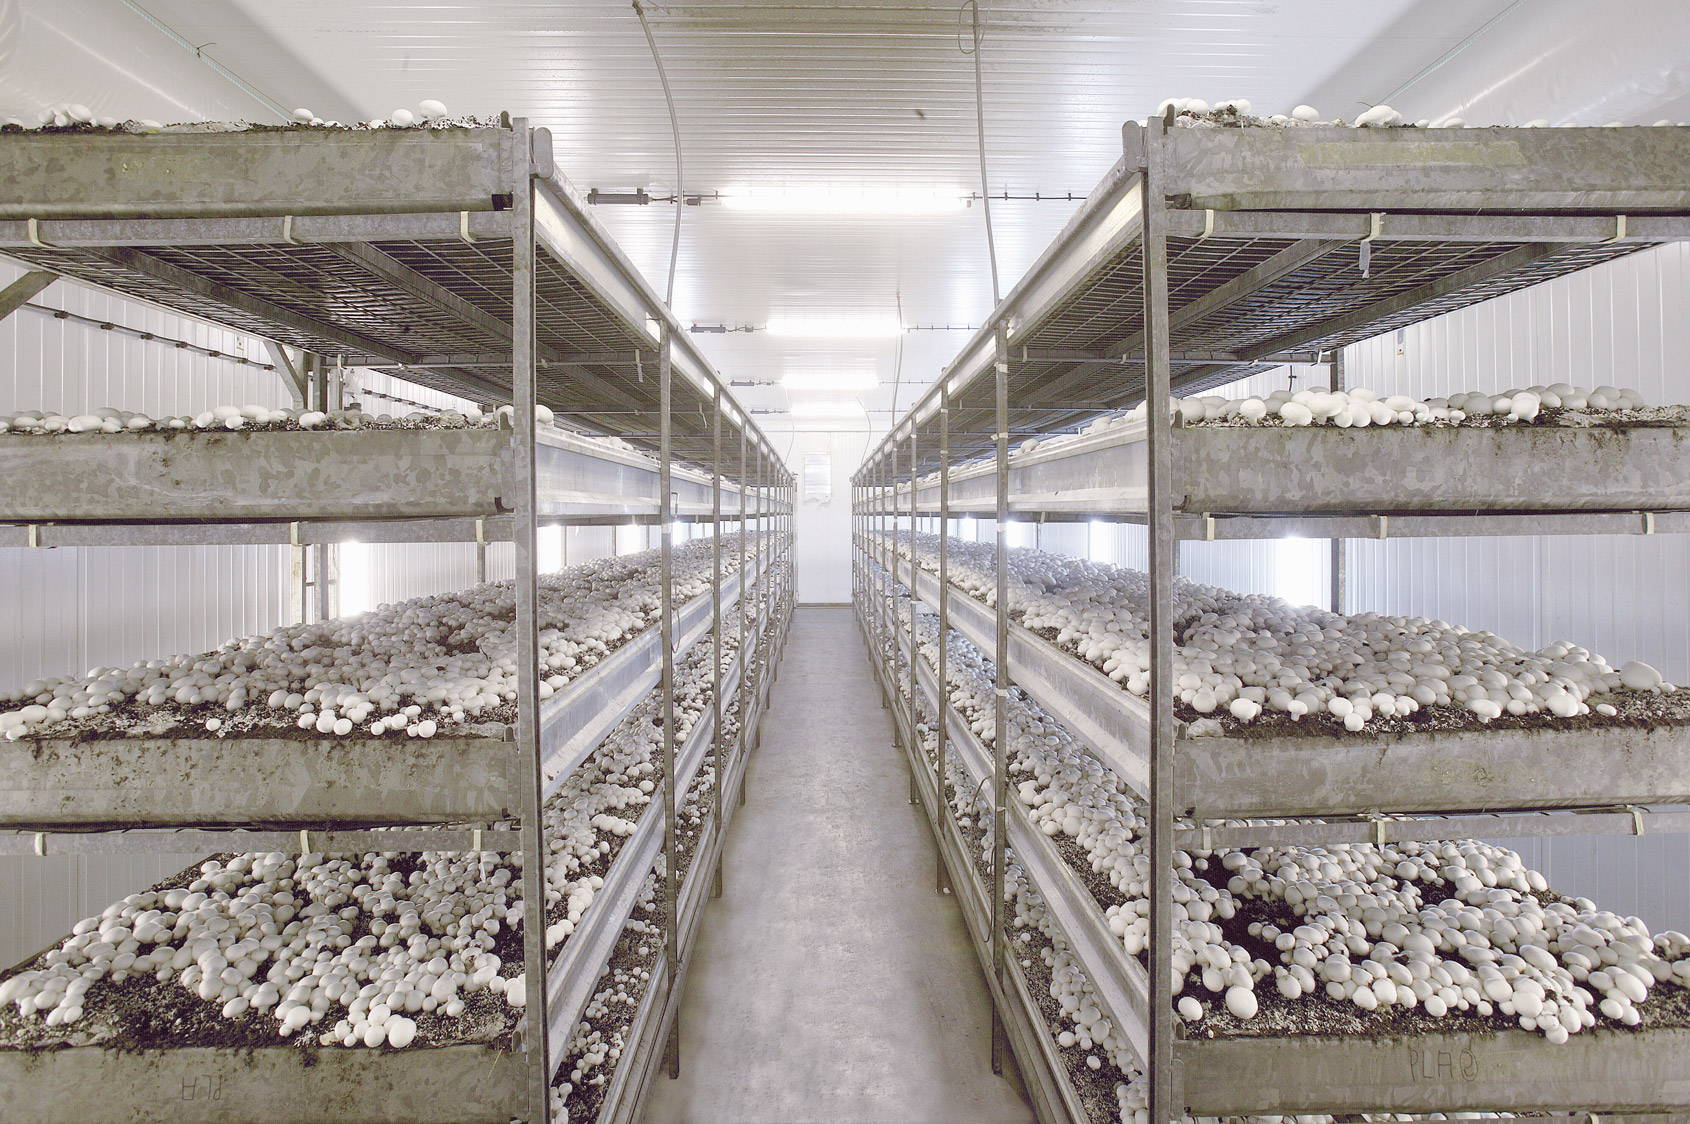 CORMO Deckerde: Zukunftslösung für die Champignonindustrie